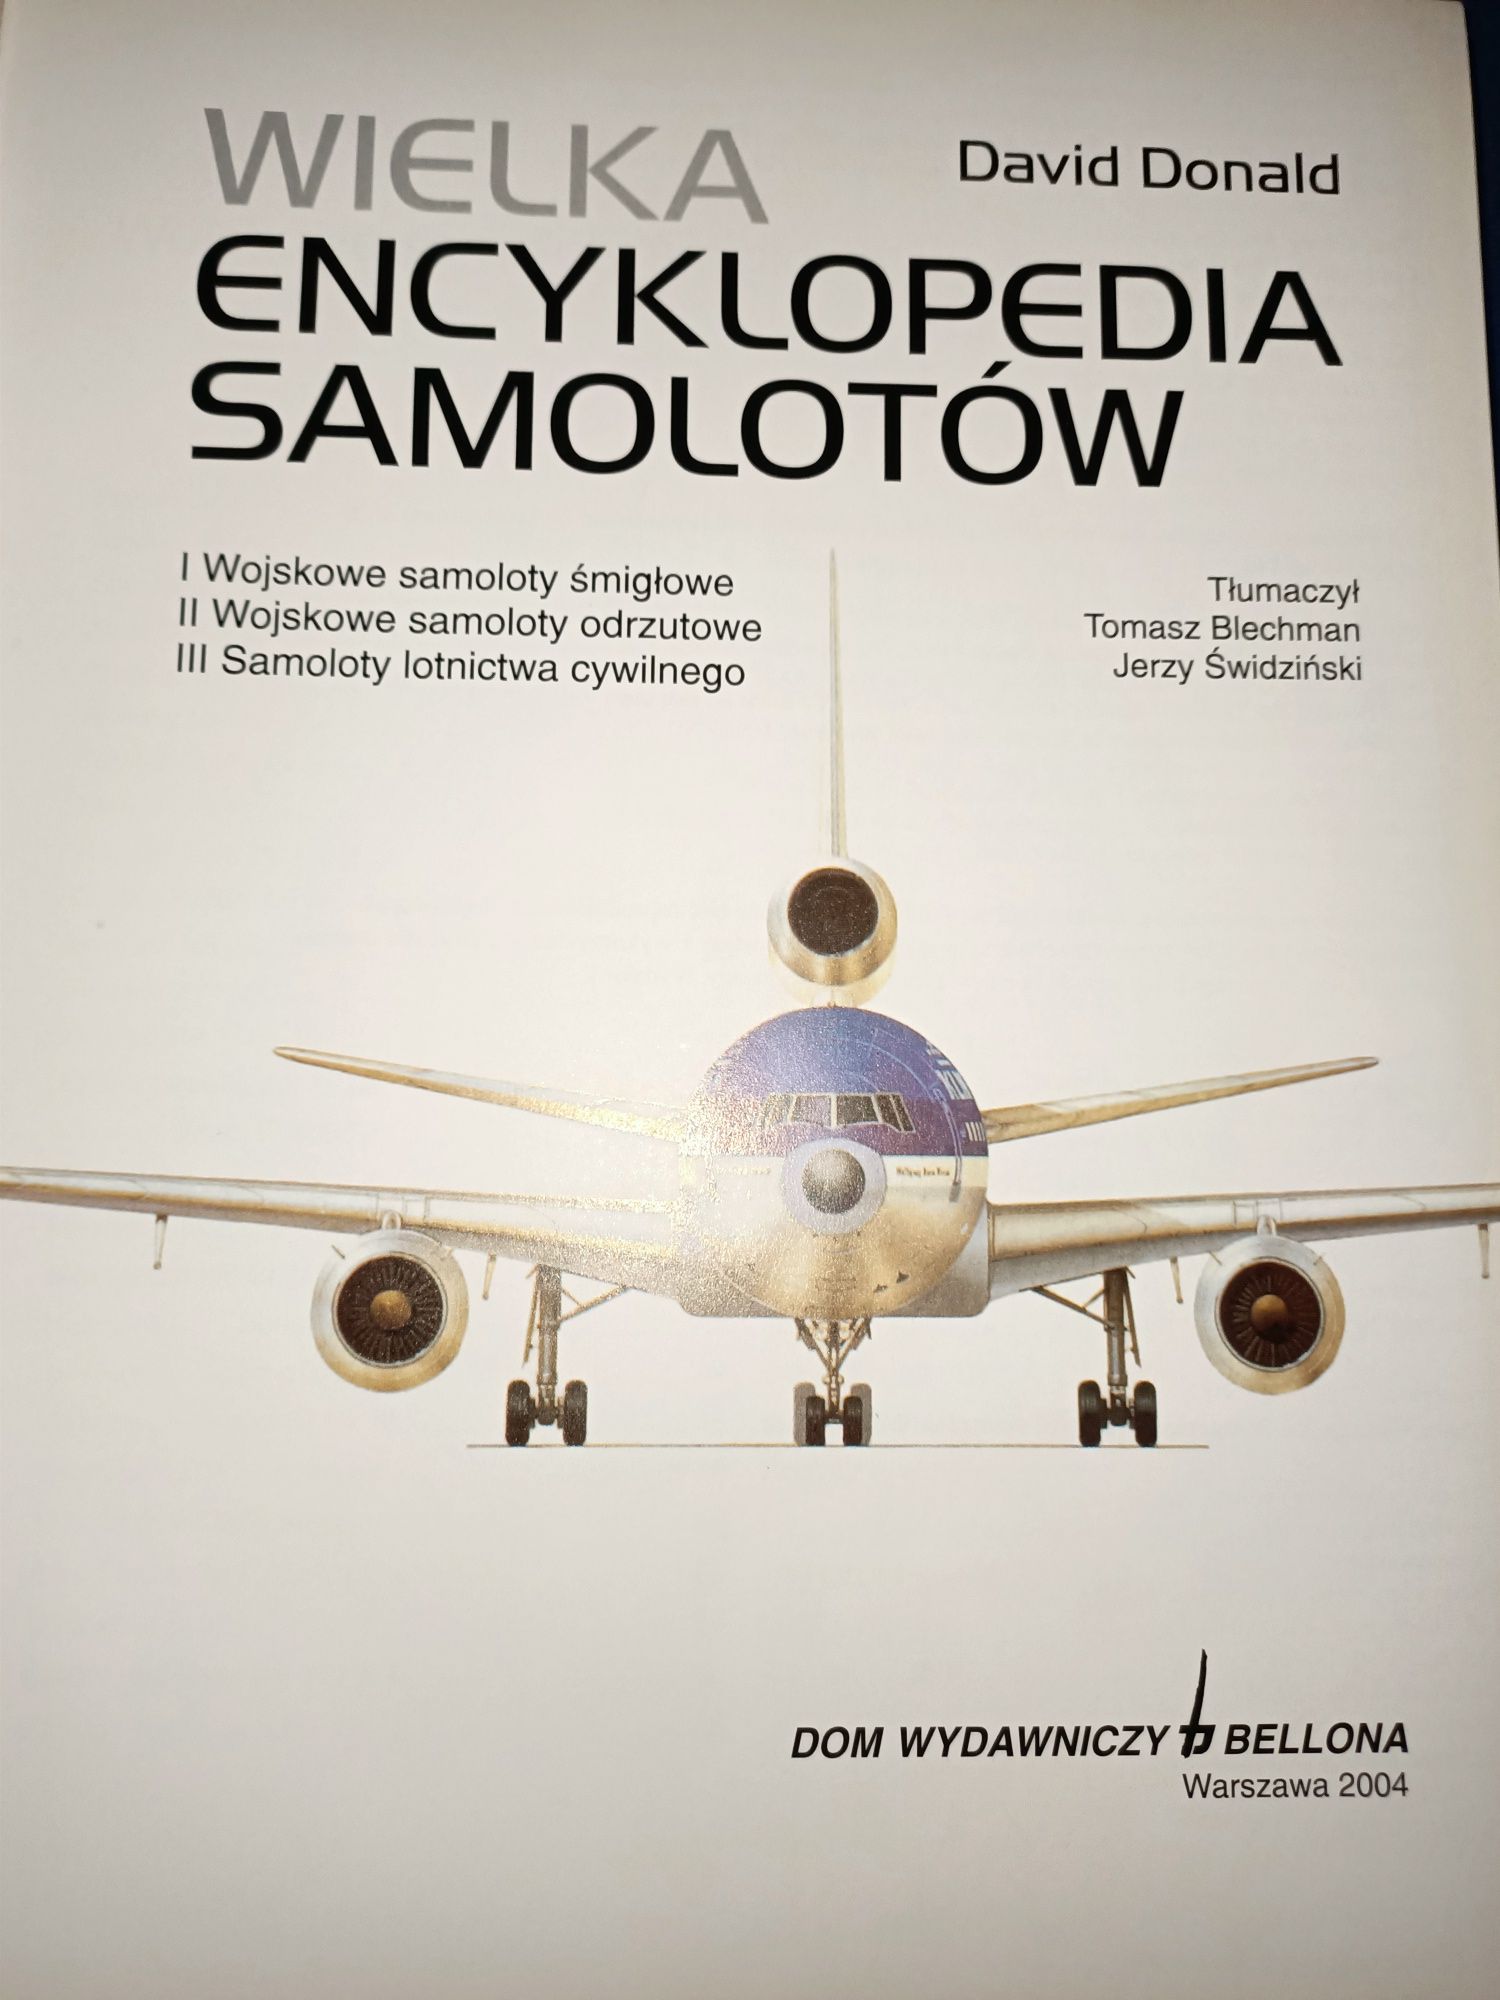 Wielka encyklopedia samolotów David Donald